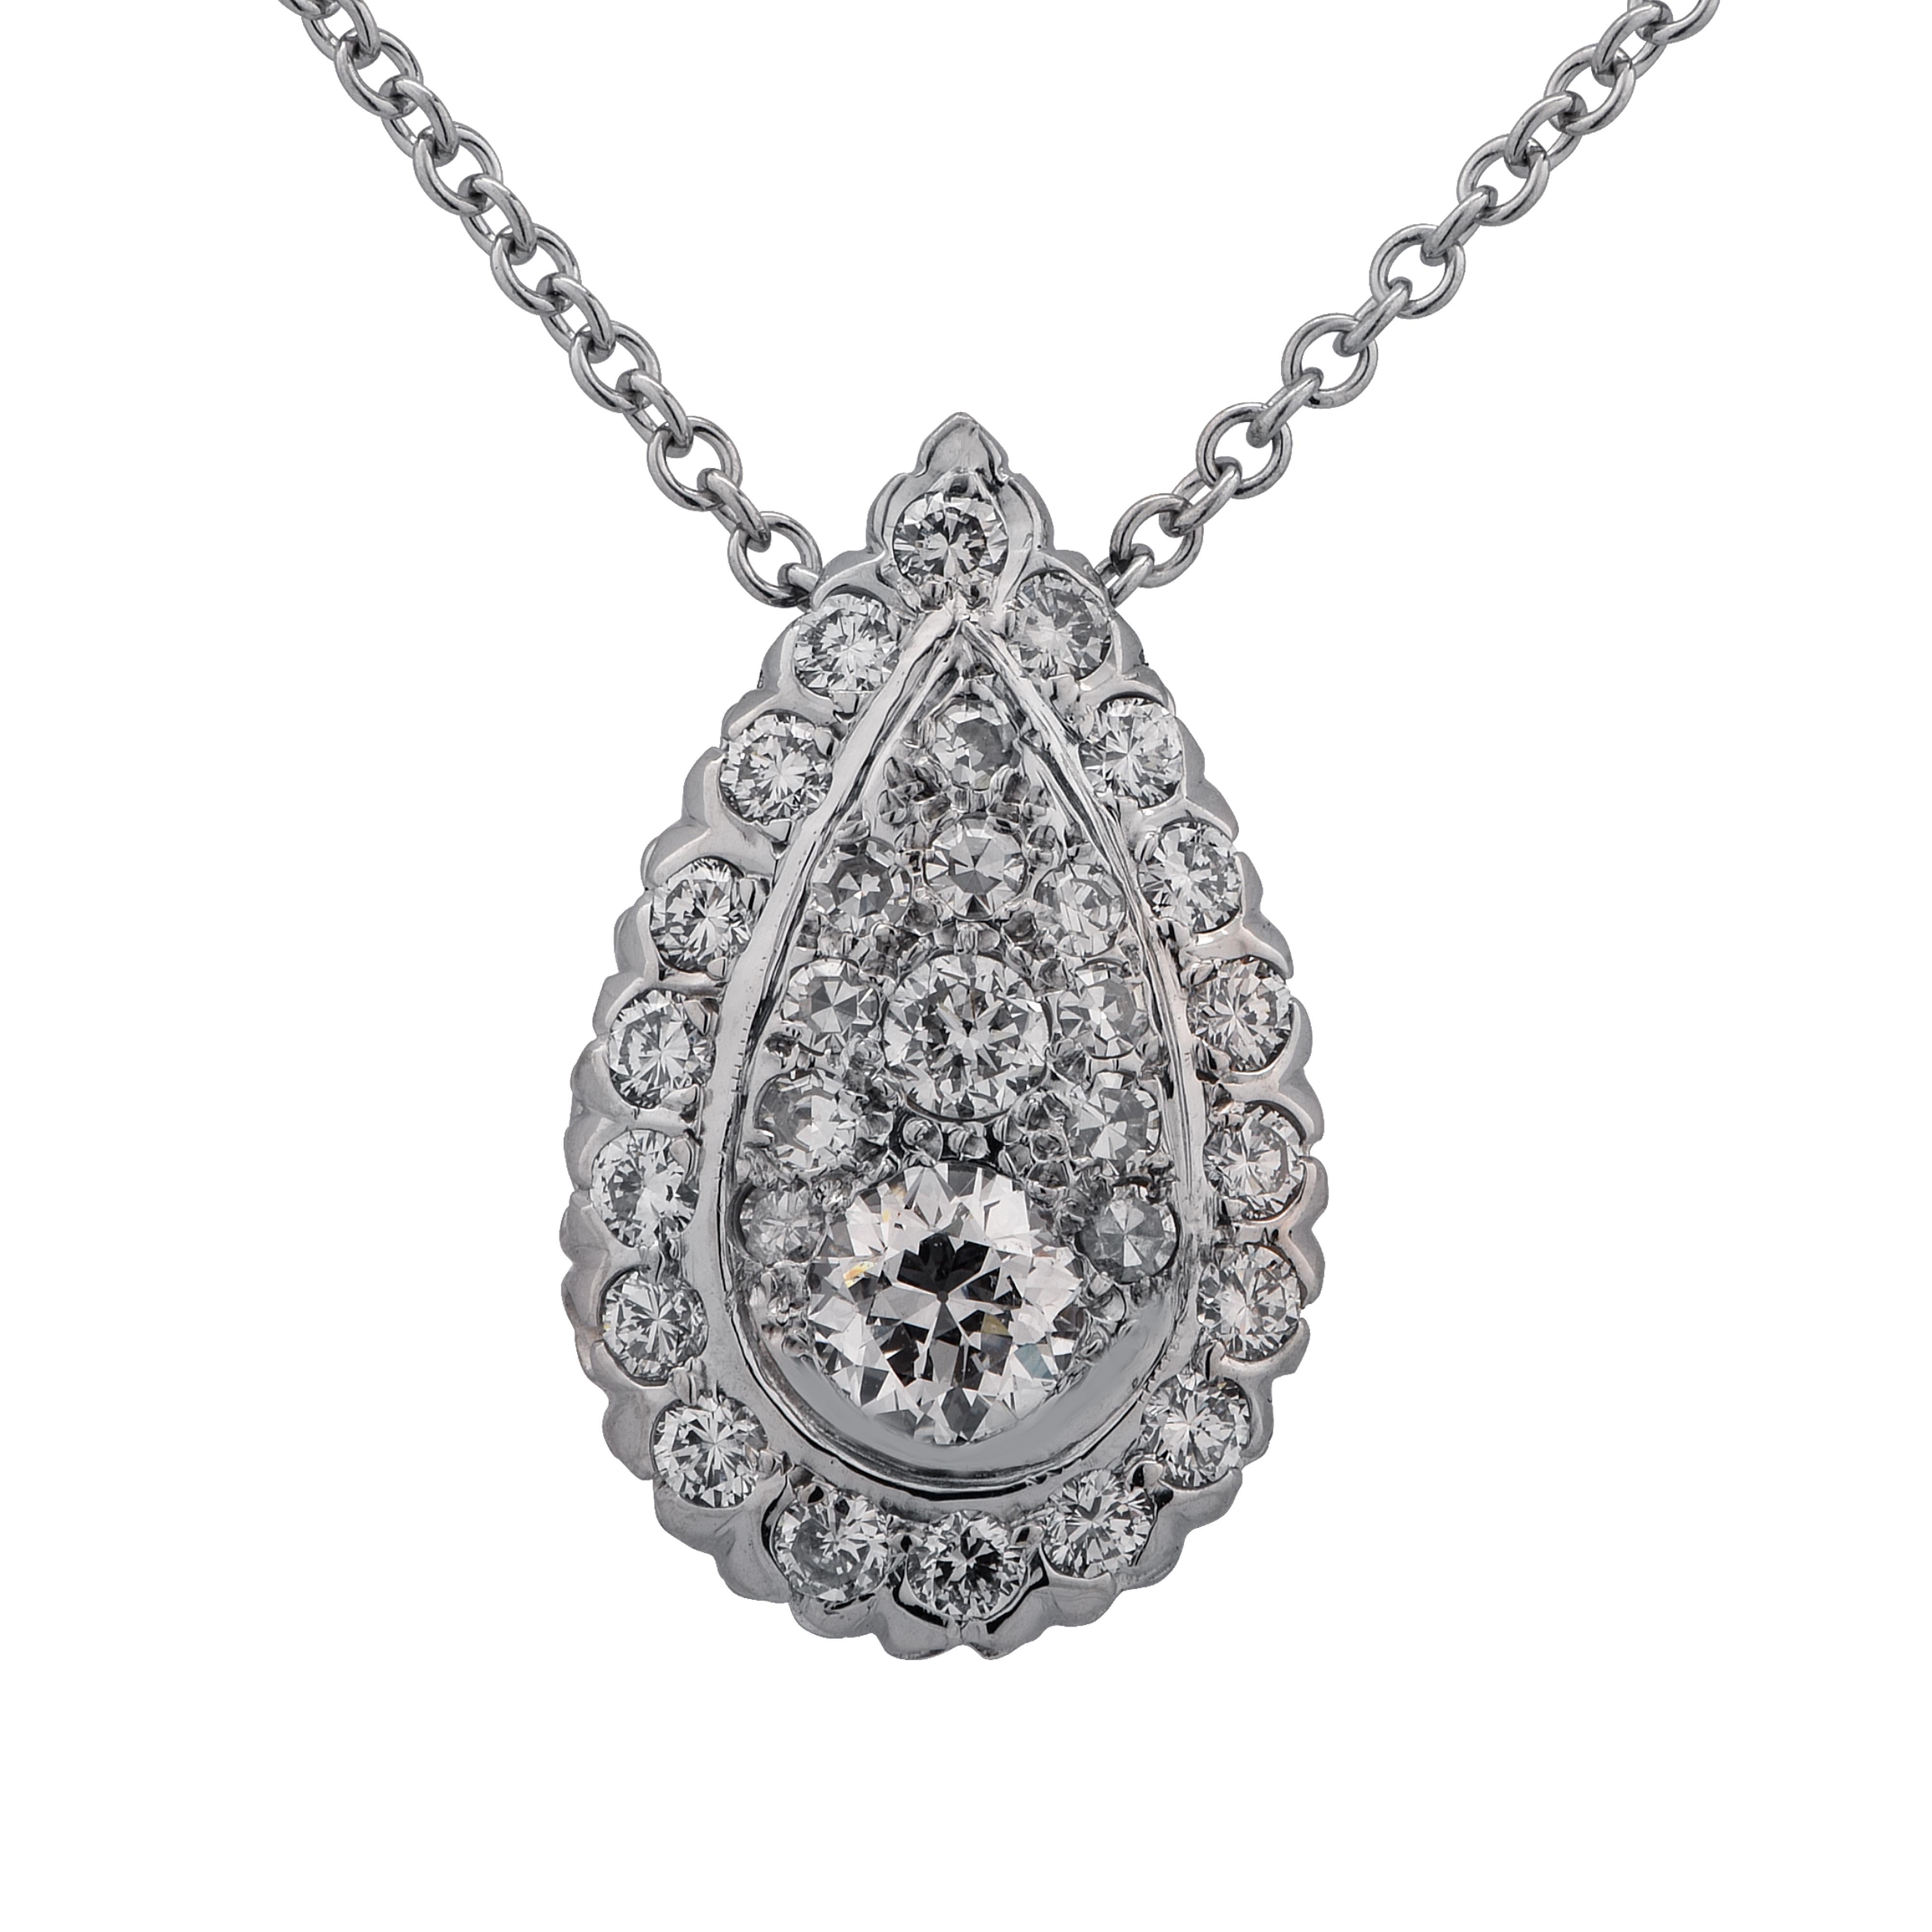 2.40 Carat Diamond Necklace